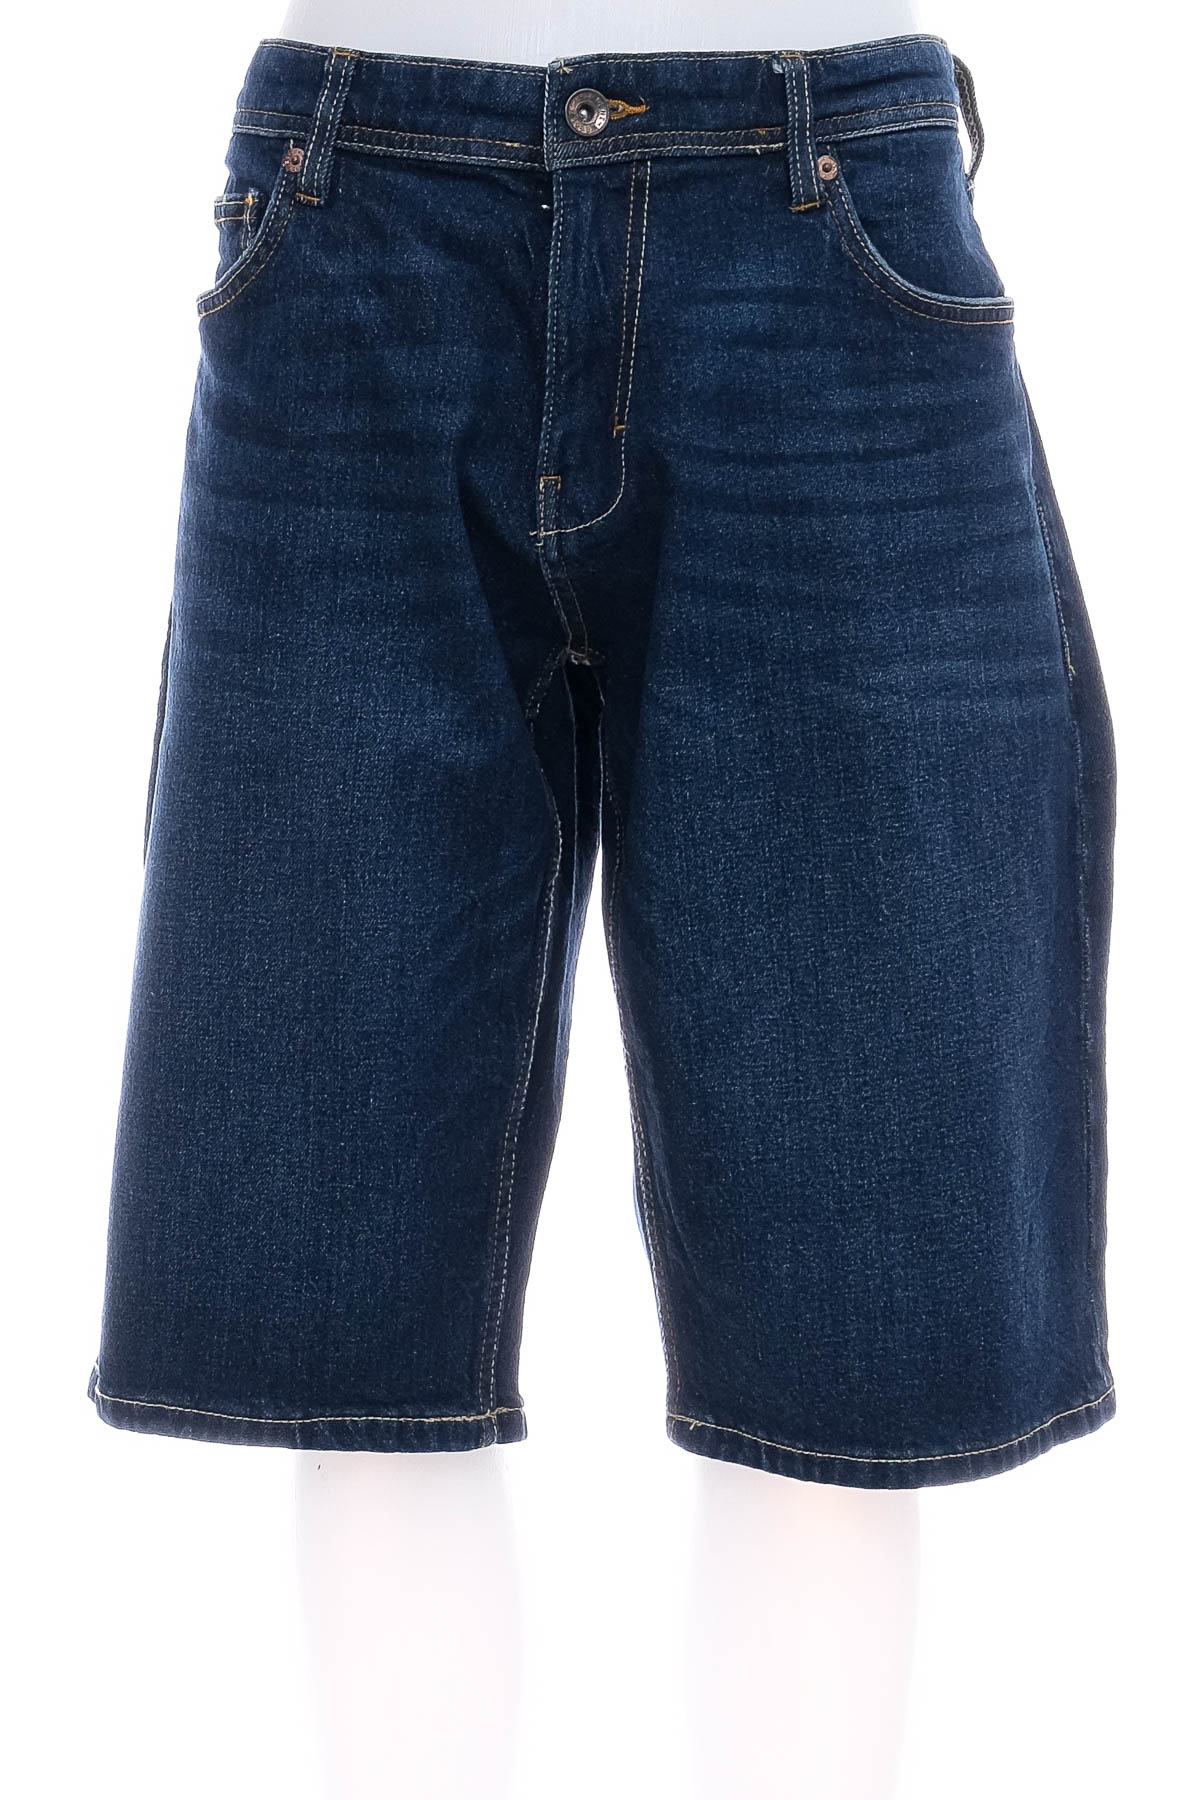 Men's shorts - ESPRIT - 0